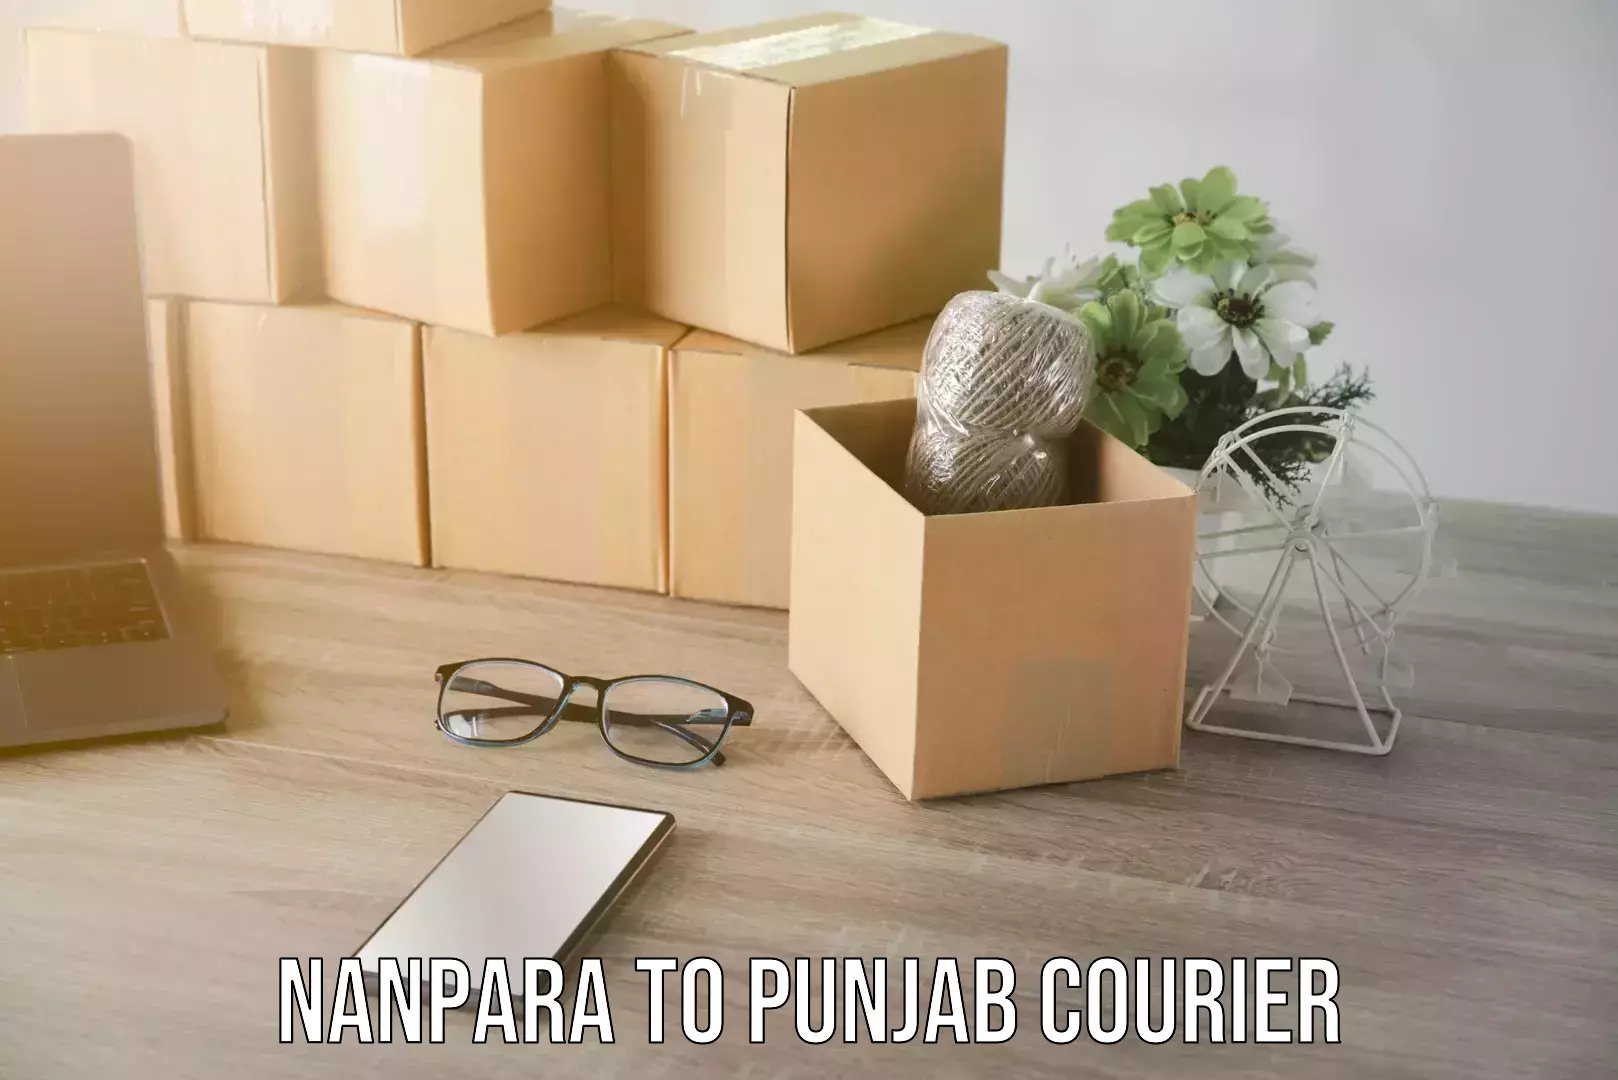 Residential moving services Nanpara to Punjab